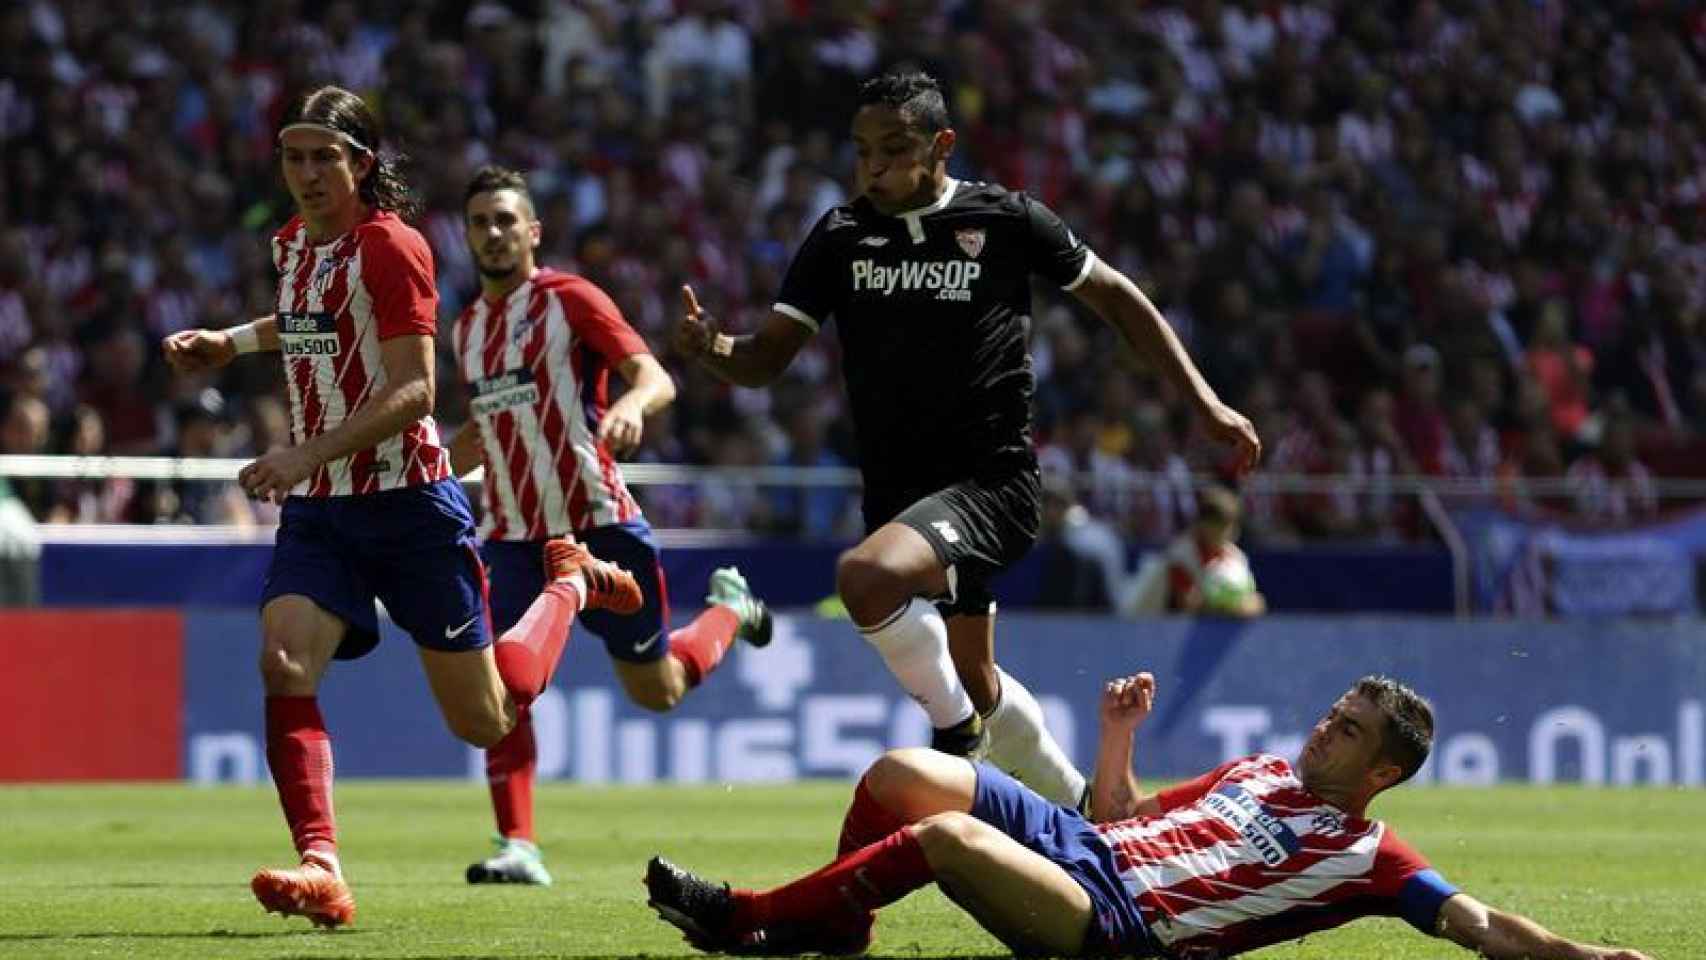 Gabi roba la pelota durante el partido contra el Sevilla.